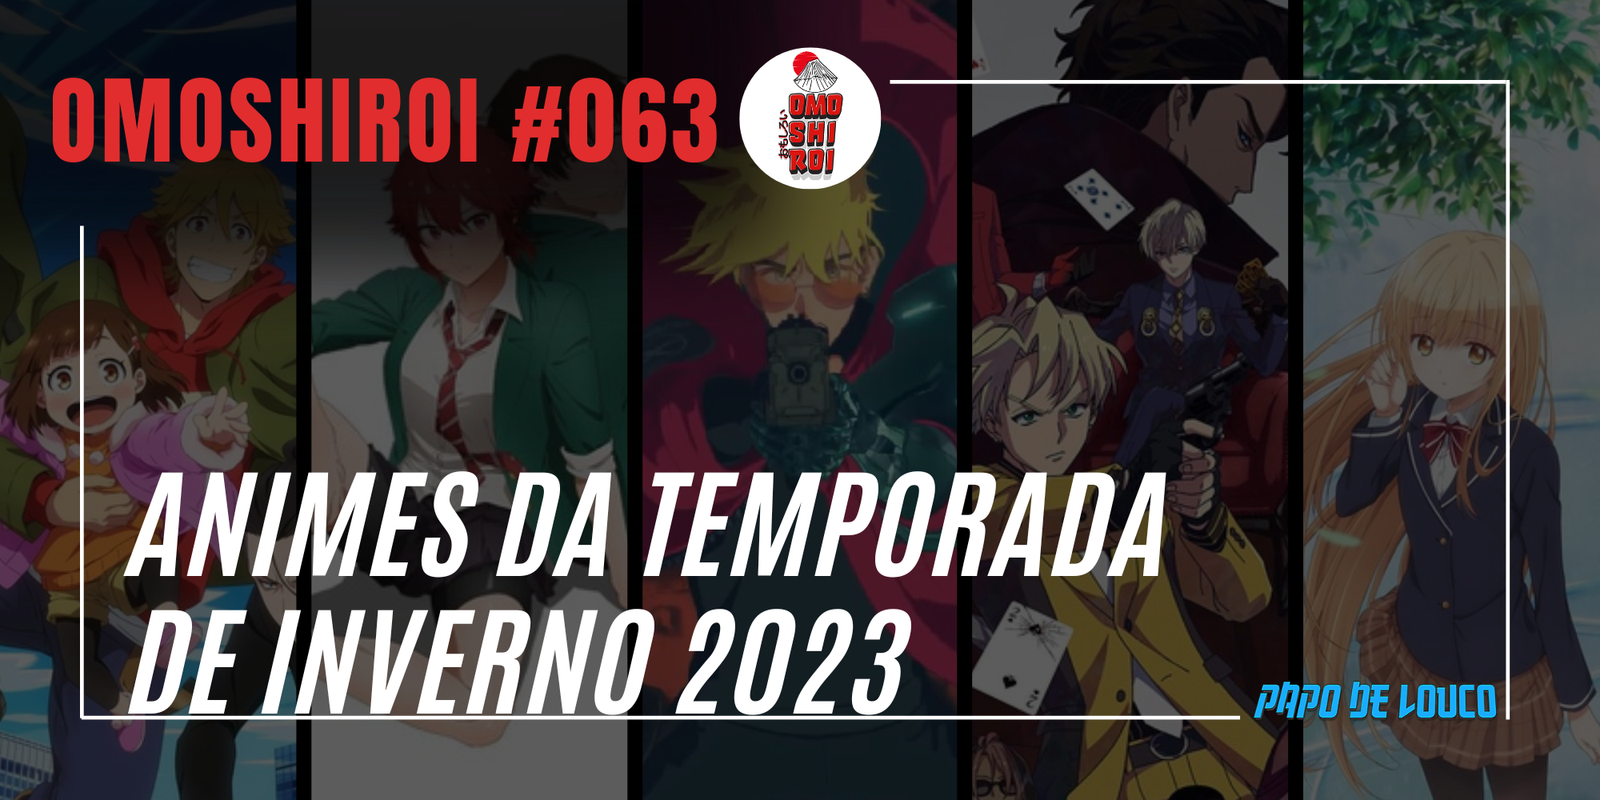 Outono de 2022: os destaques dessa temporada de animes